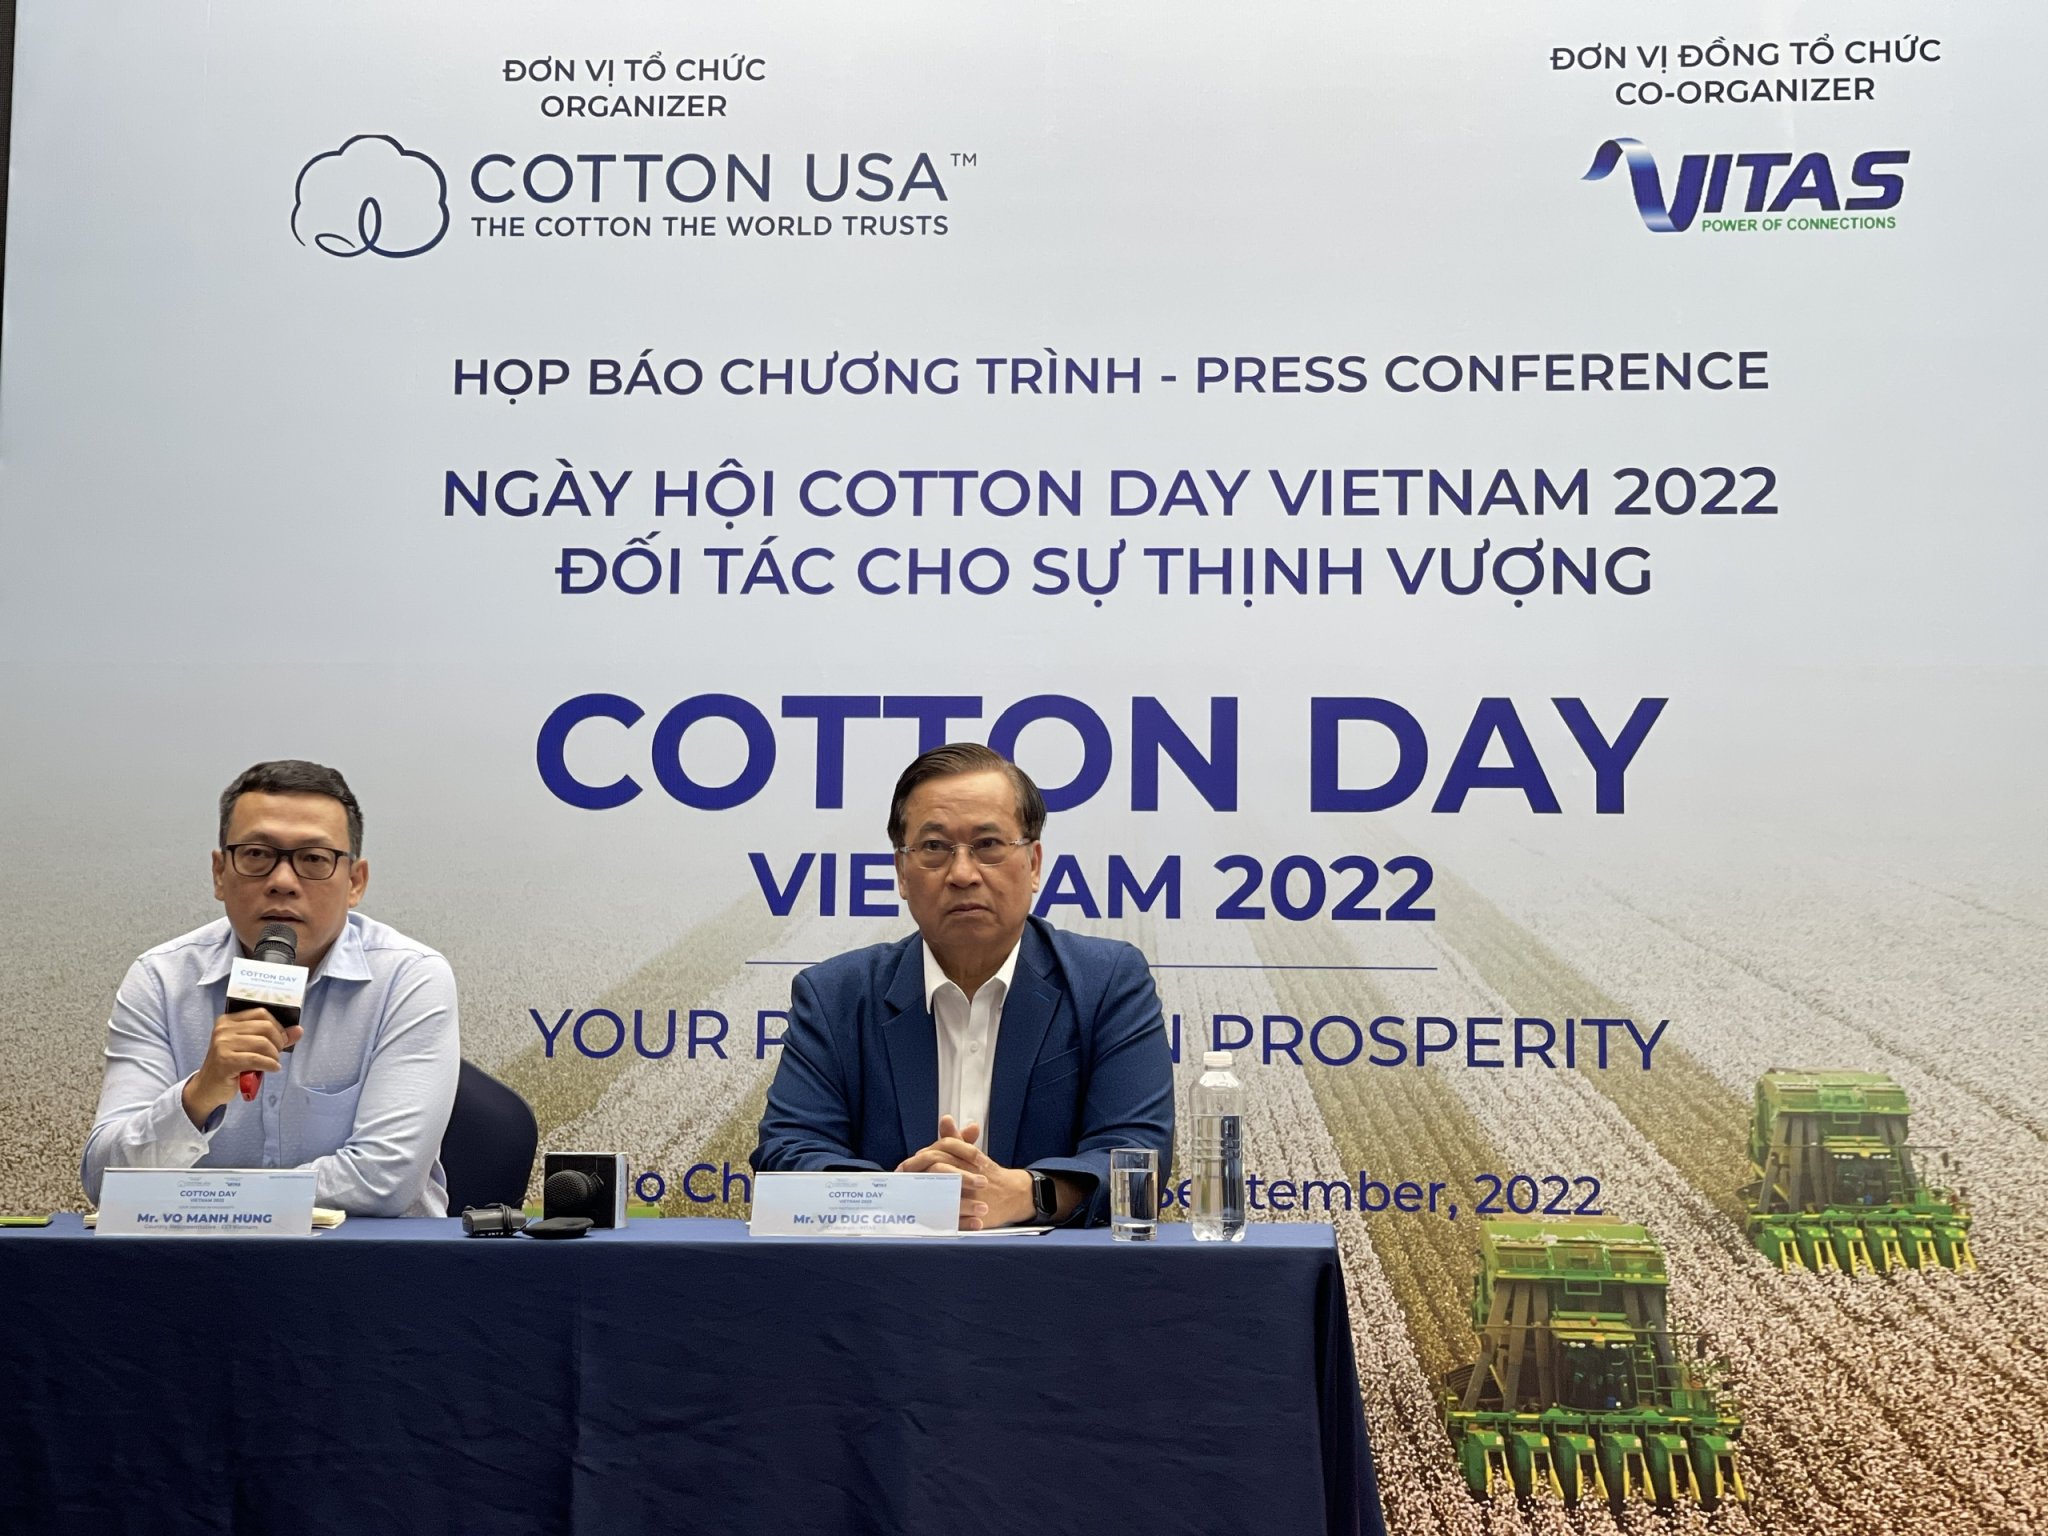 COTTON DAY VIETNAM 2022 2 COTTON DAY VIETNAM 2022: Cung cấp giải pháp phát triển xanh, bền vững cho dệt may Việt